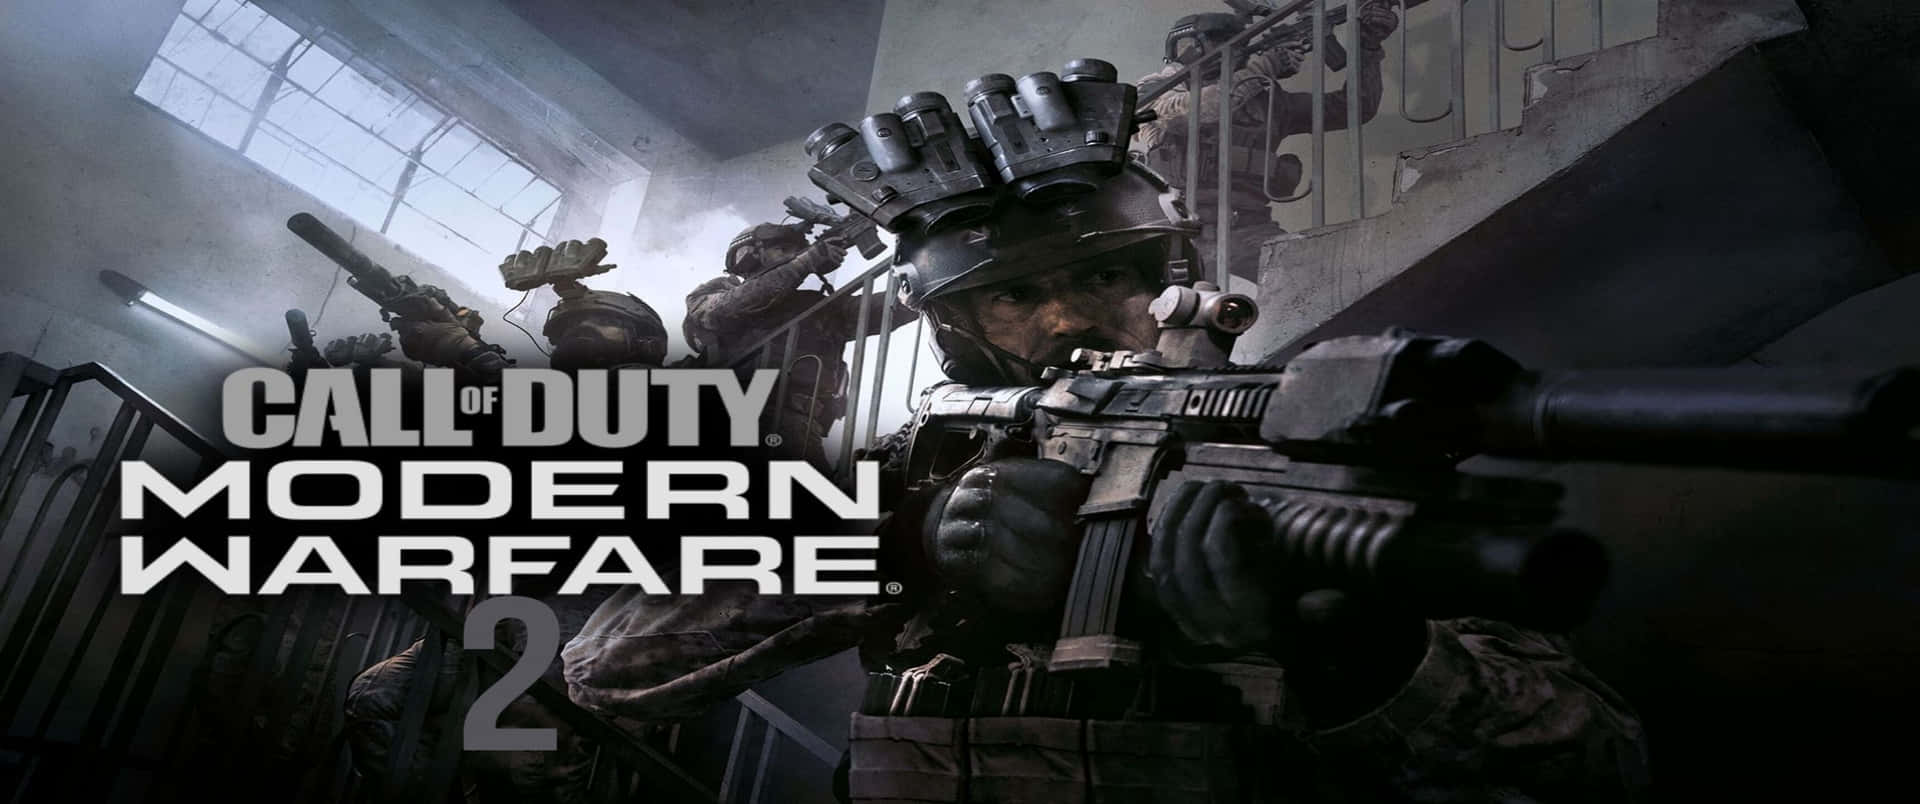 Fondode Pantalla De Call Of Duty Modern Warfare De Alex Keller En Resolución 3440x1440p.